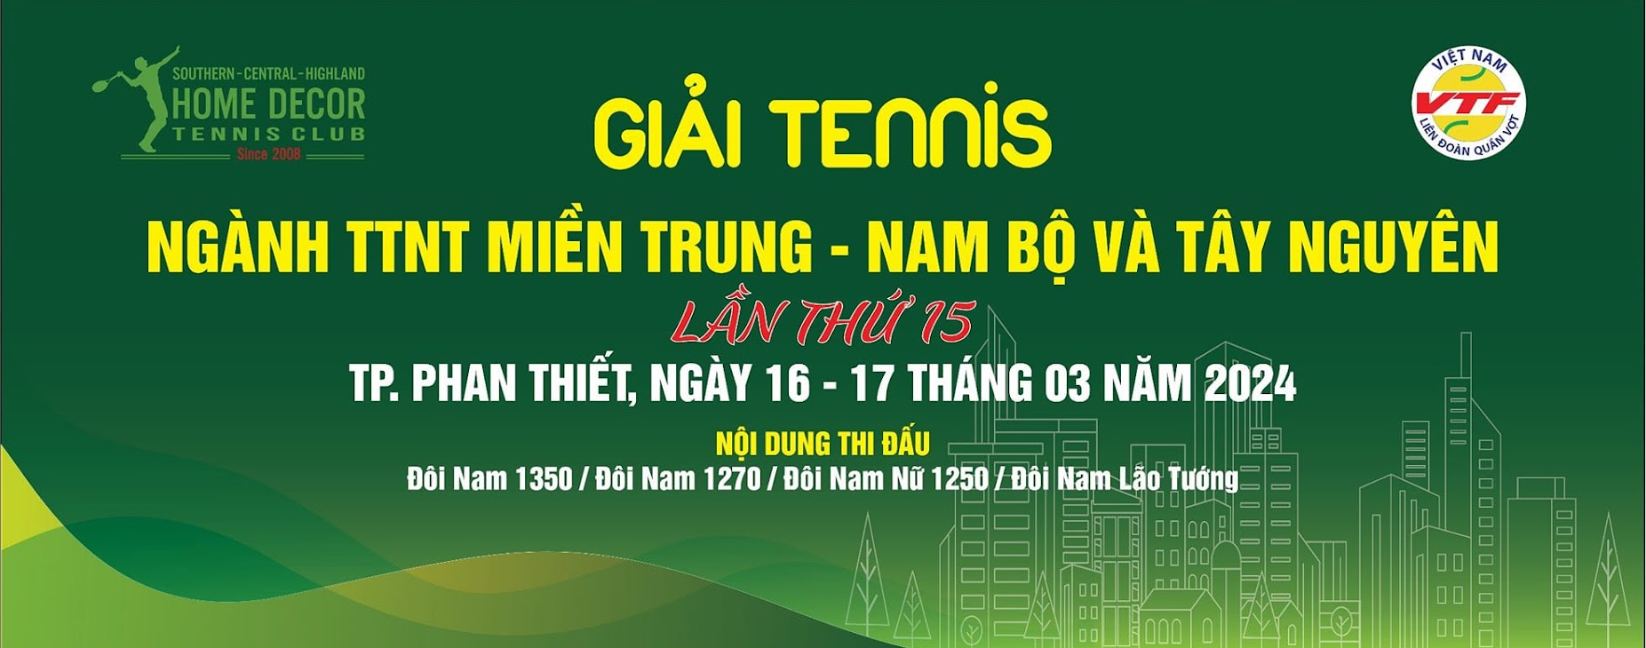 Gần 300 tay vợt tranh tài tại giải tennis ngành TTNT miền Trung Nam bộ và Tây Nguyên lần thứ 15 - Ảnh 1.